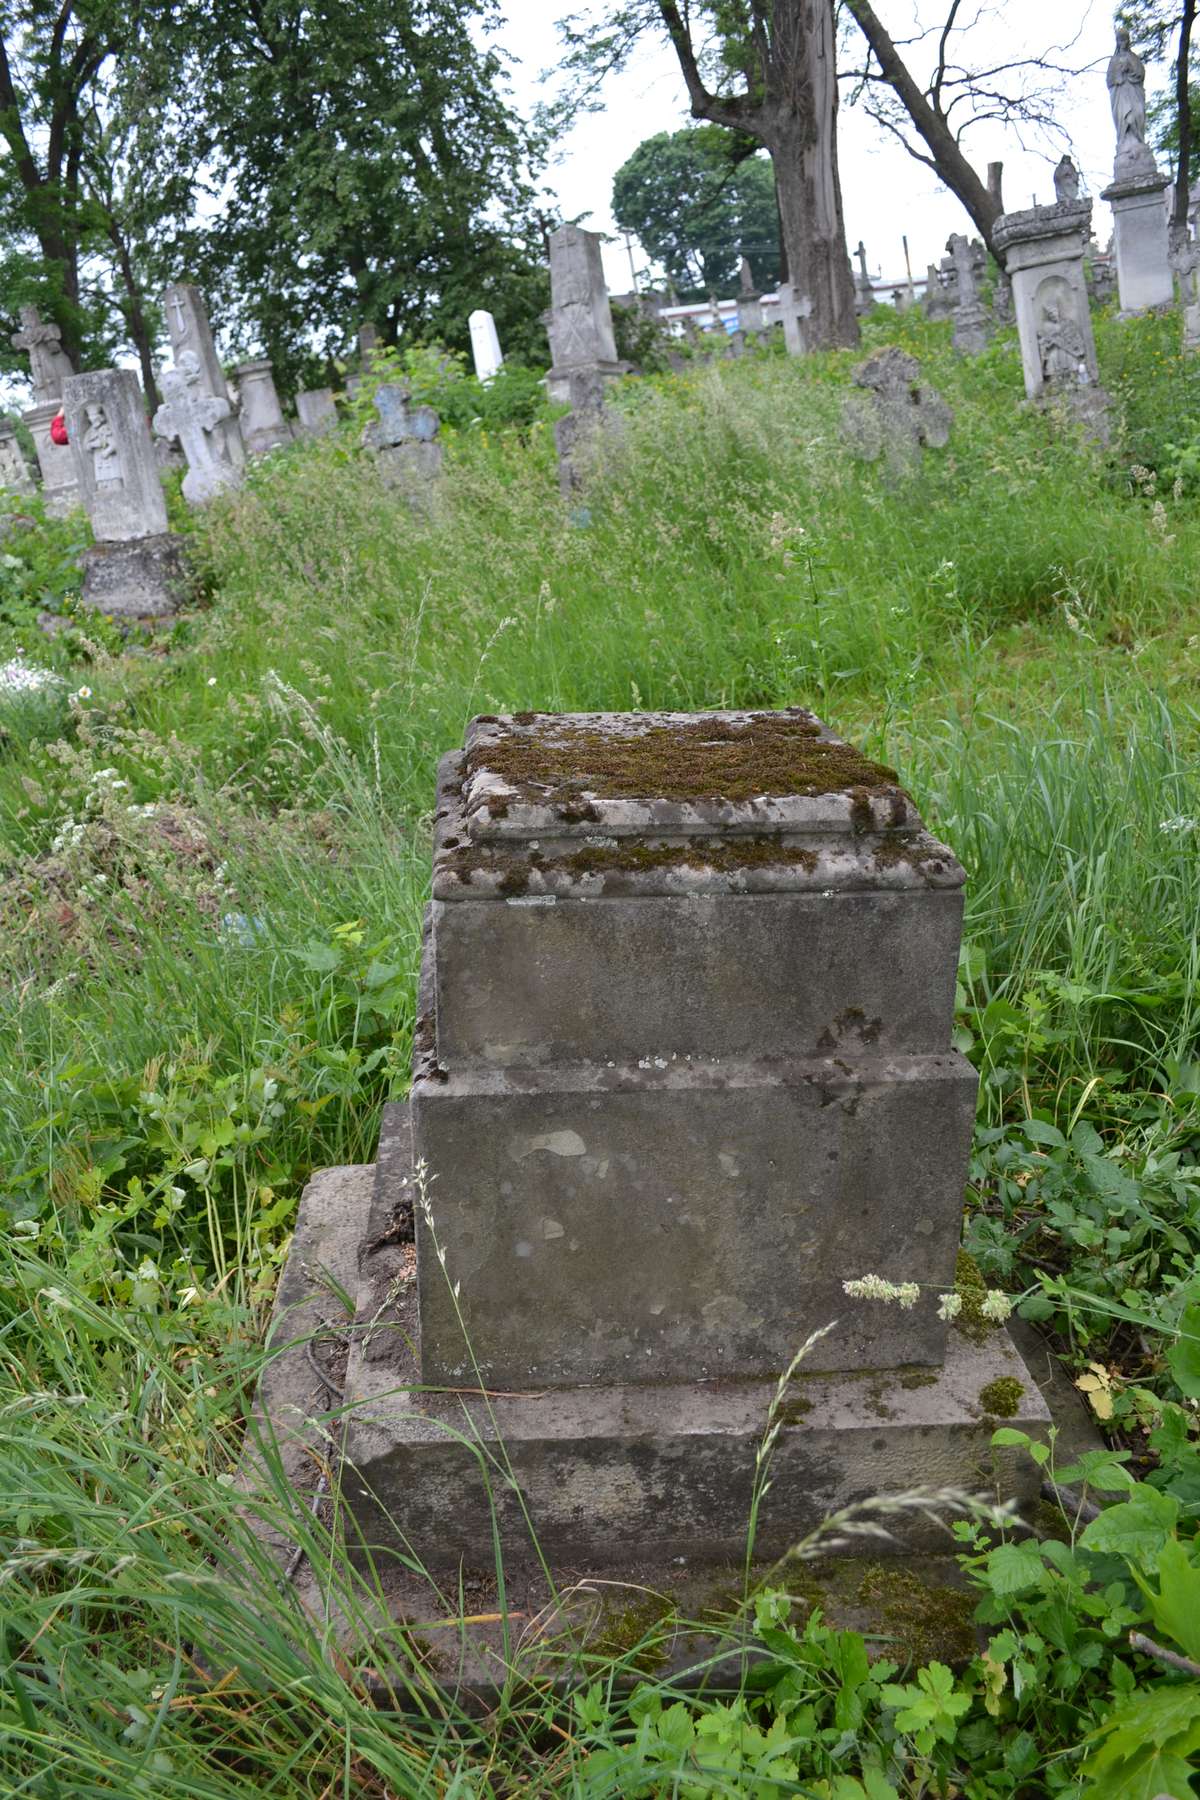 Fragment of the tombstone of Franciszek and Andrzej Zajczyk, Zbarazh cemetery, as of 2018